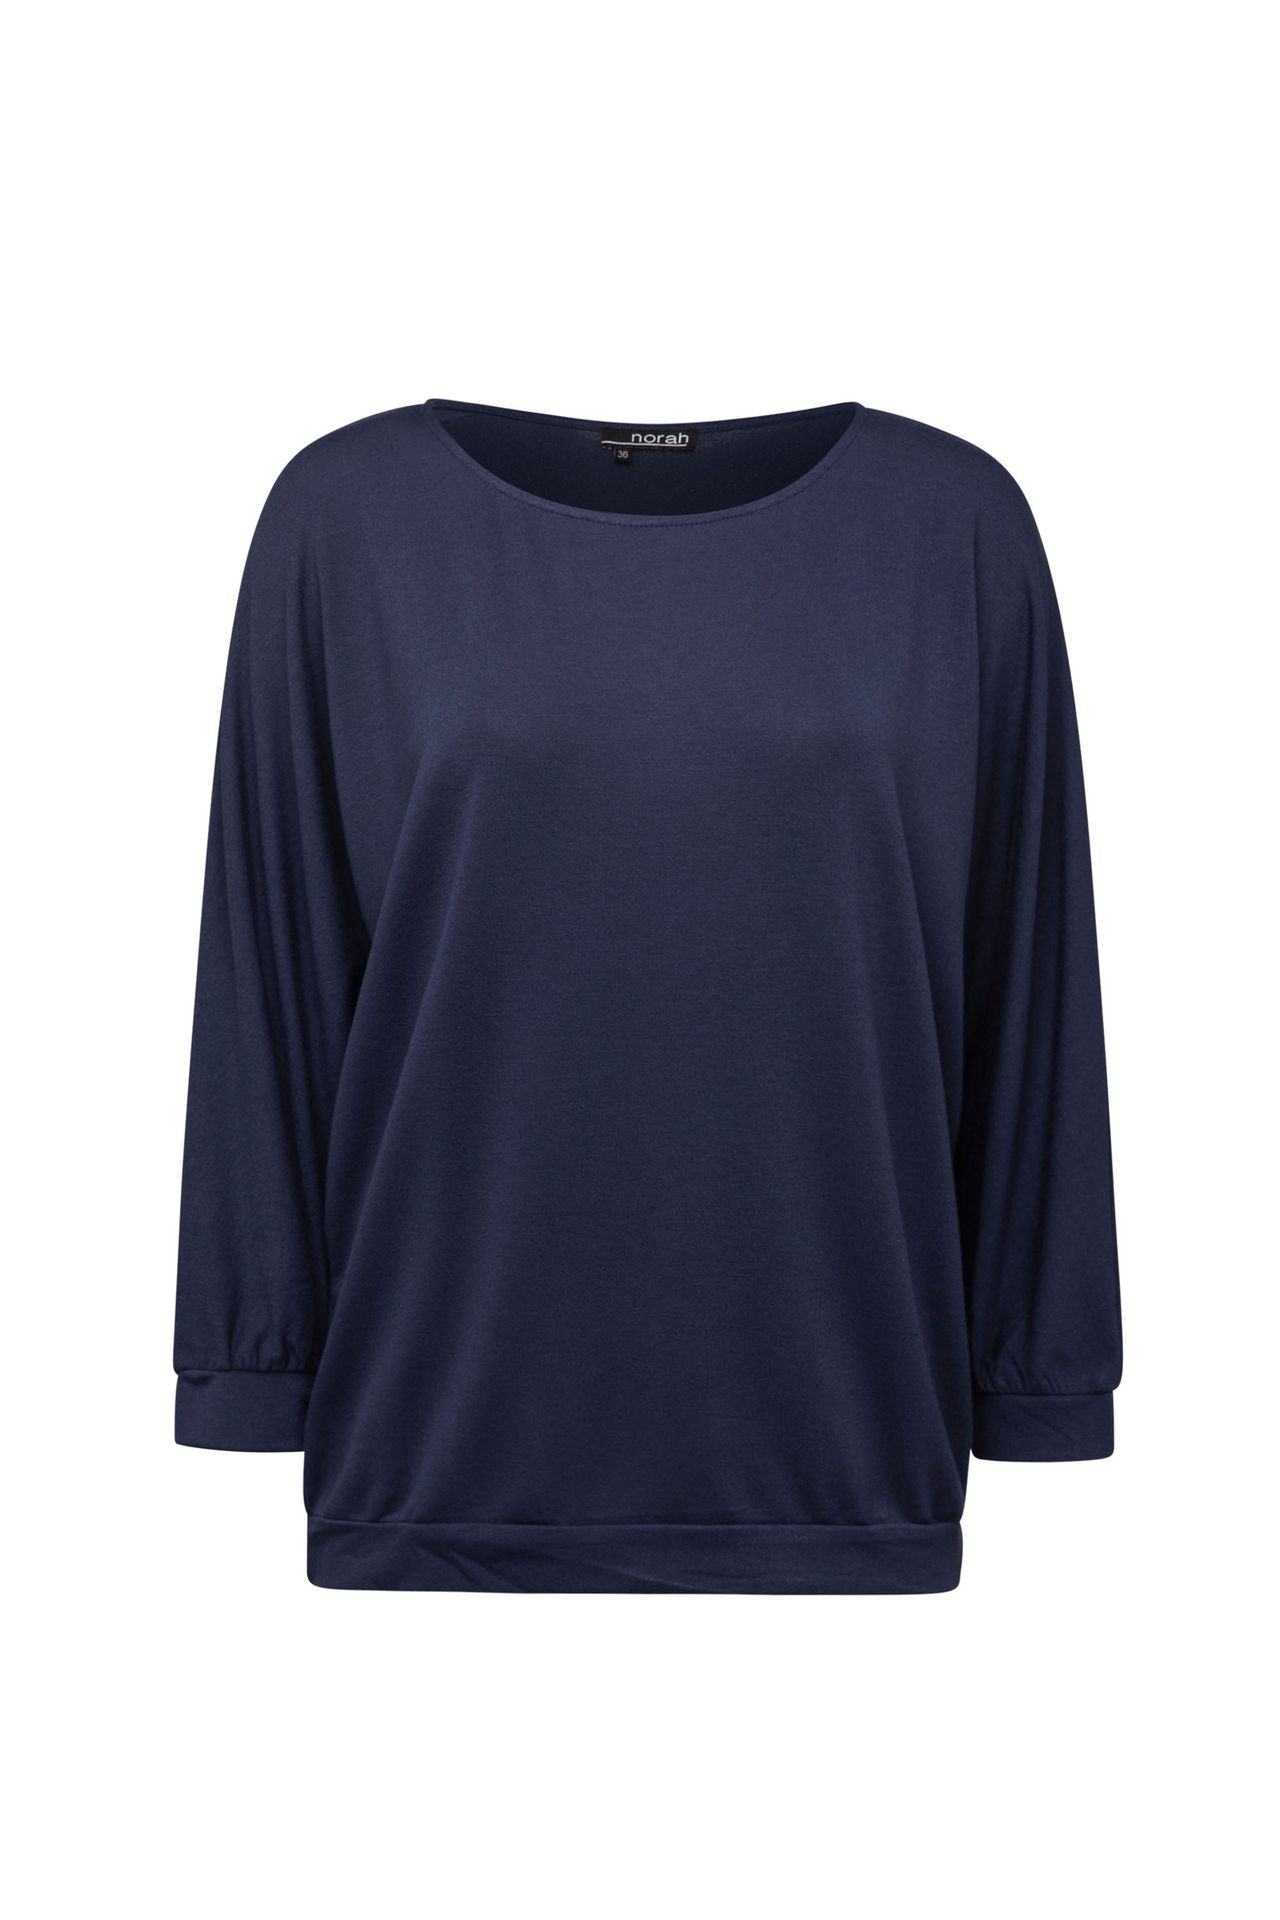 Norah Blauwe trui met lange mouwen dark blue 213504-499